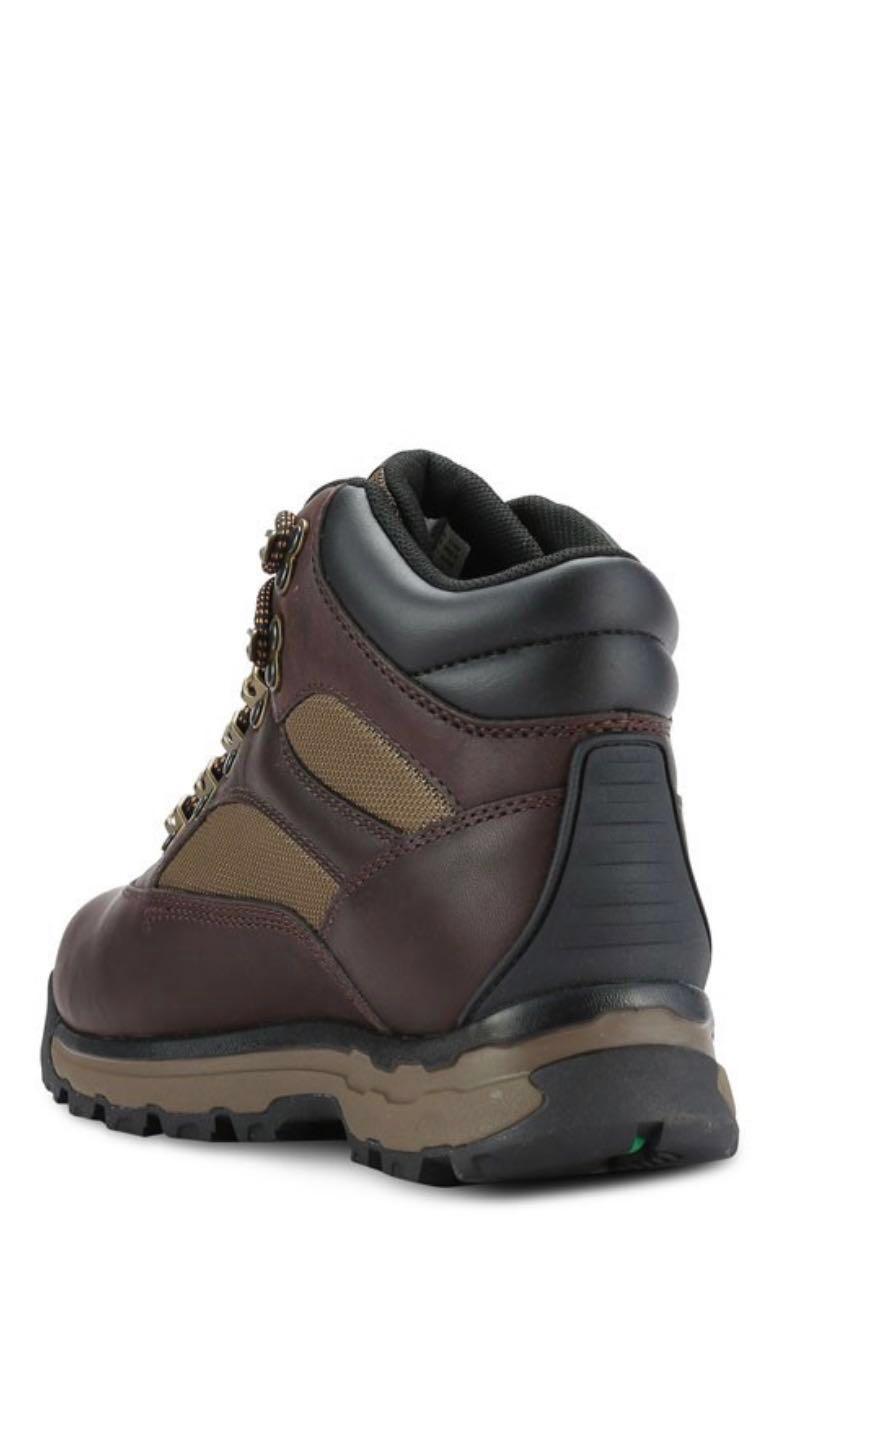 timberland chocorua trail boots